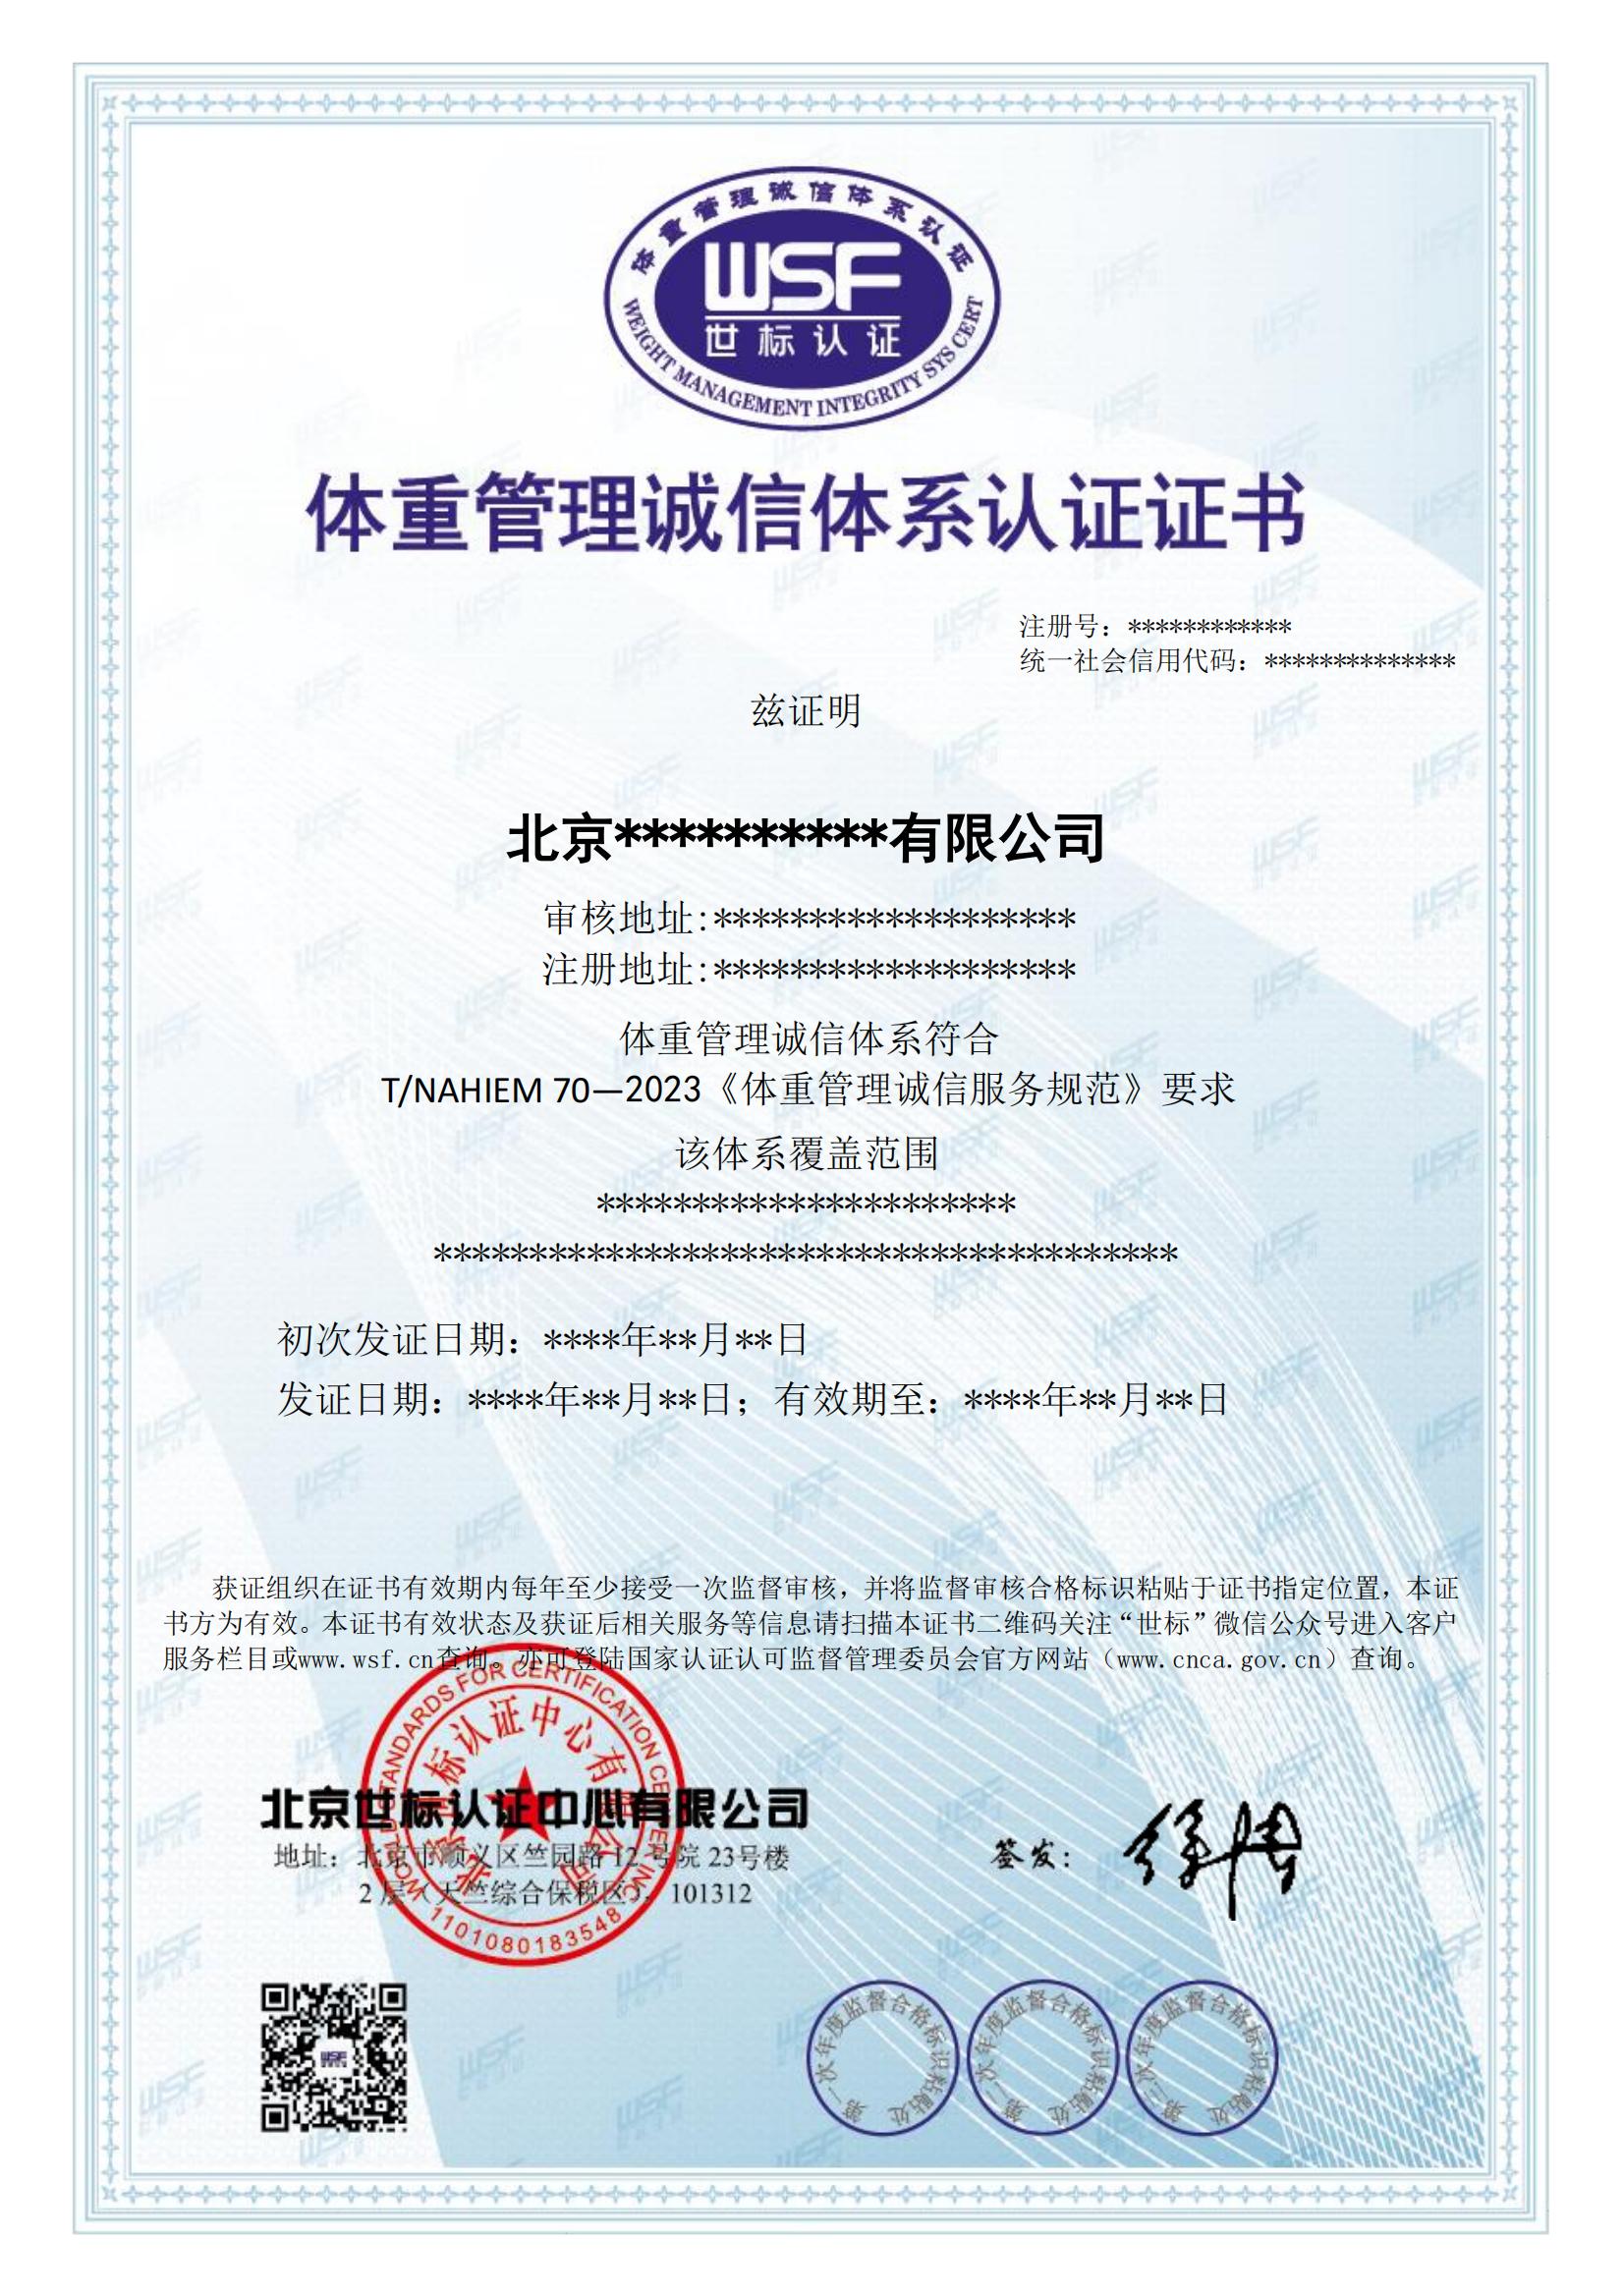 体重管理诚信体系认证证书样本--中文_00.jpg